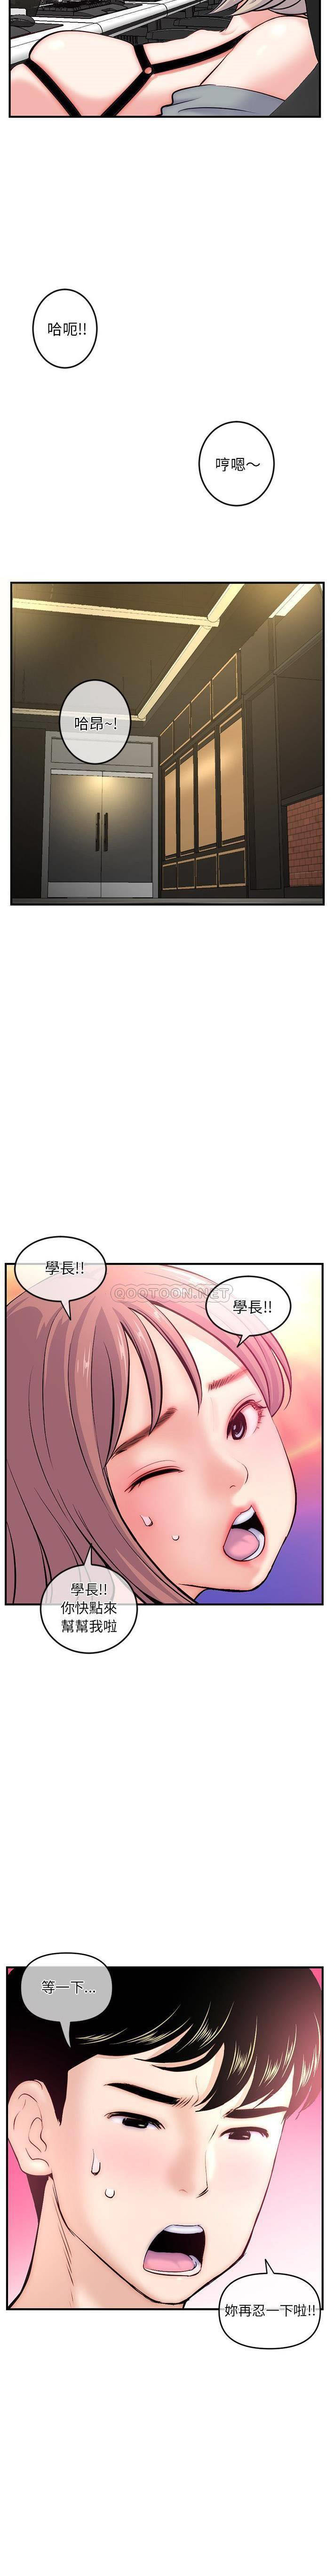 韩国污漫画 深夜網吧 第14话 16